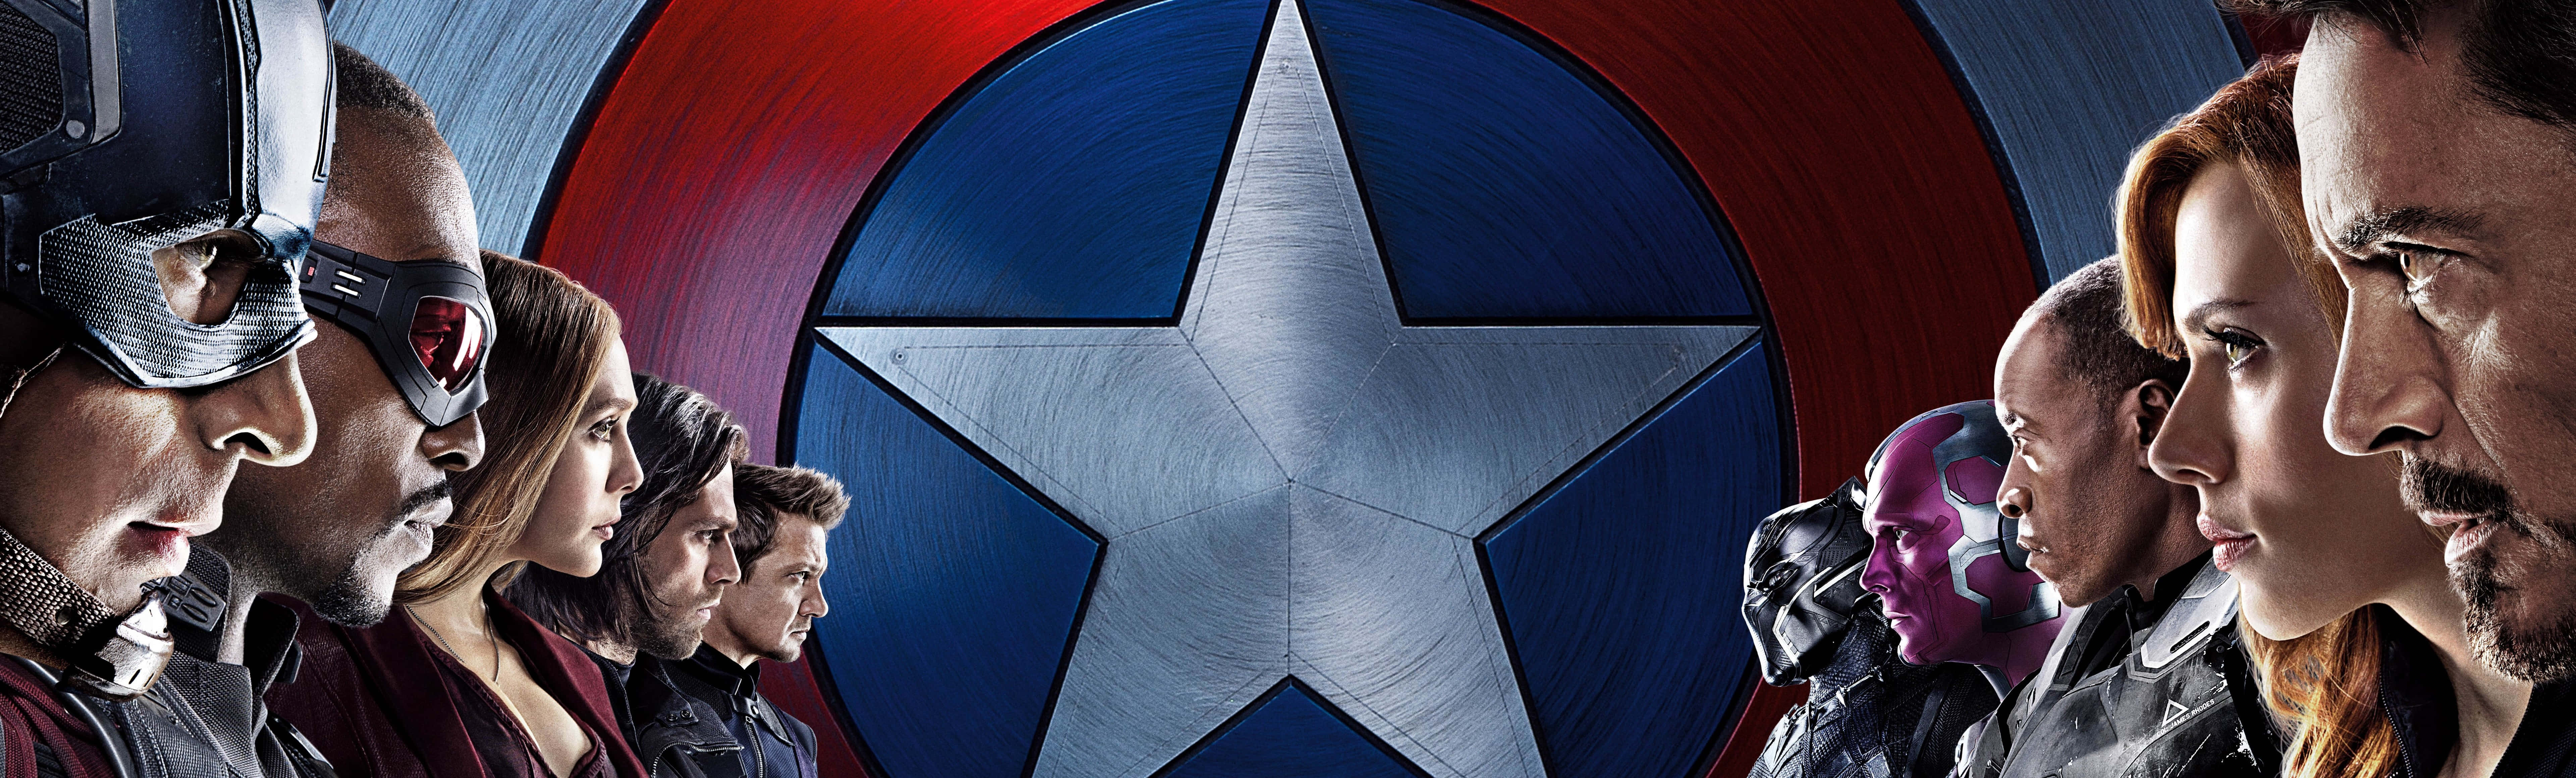 Úneteal Capitán América En Su Épica Aventura De Dos Pantallas. Fondo de pantalla